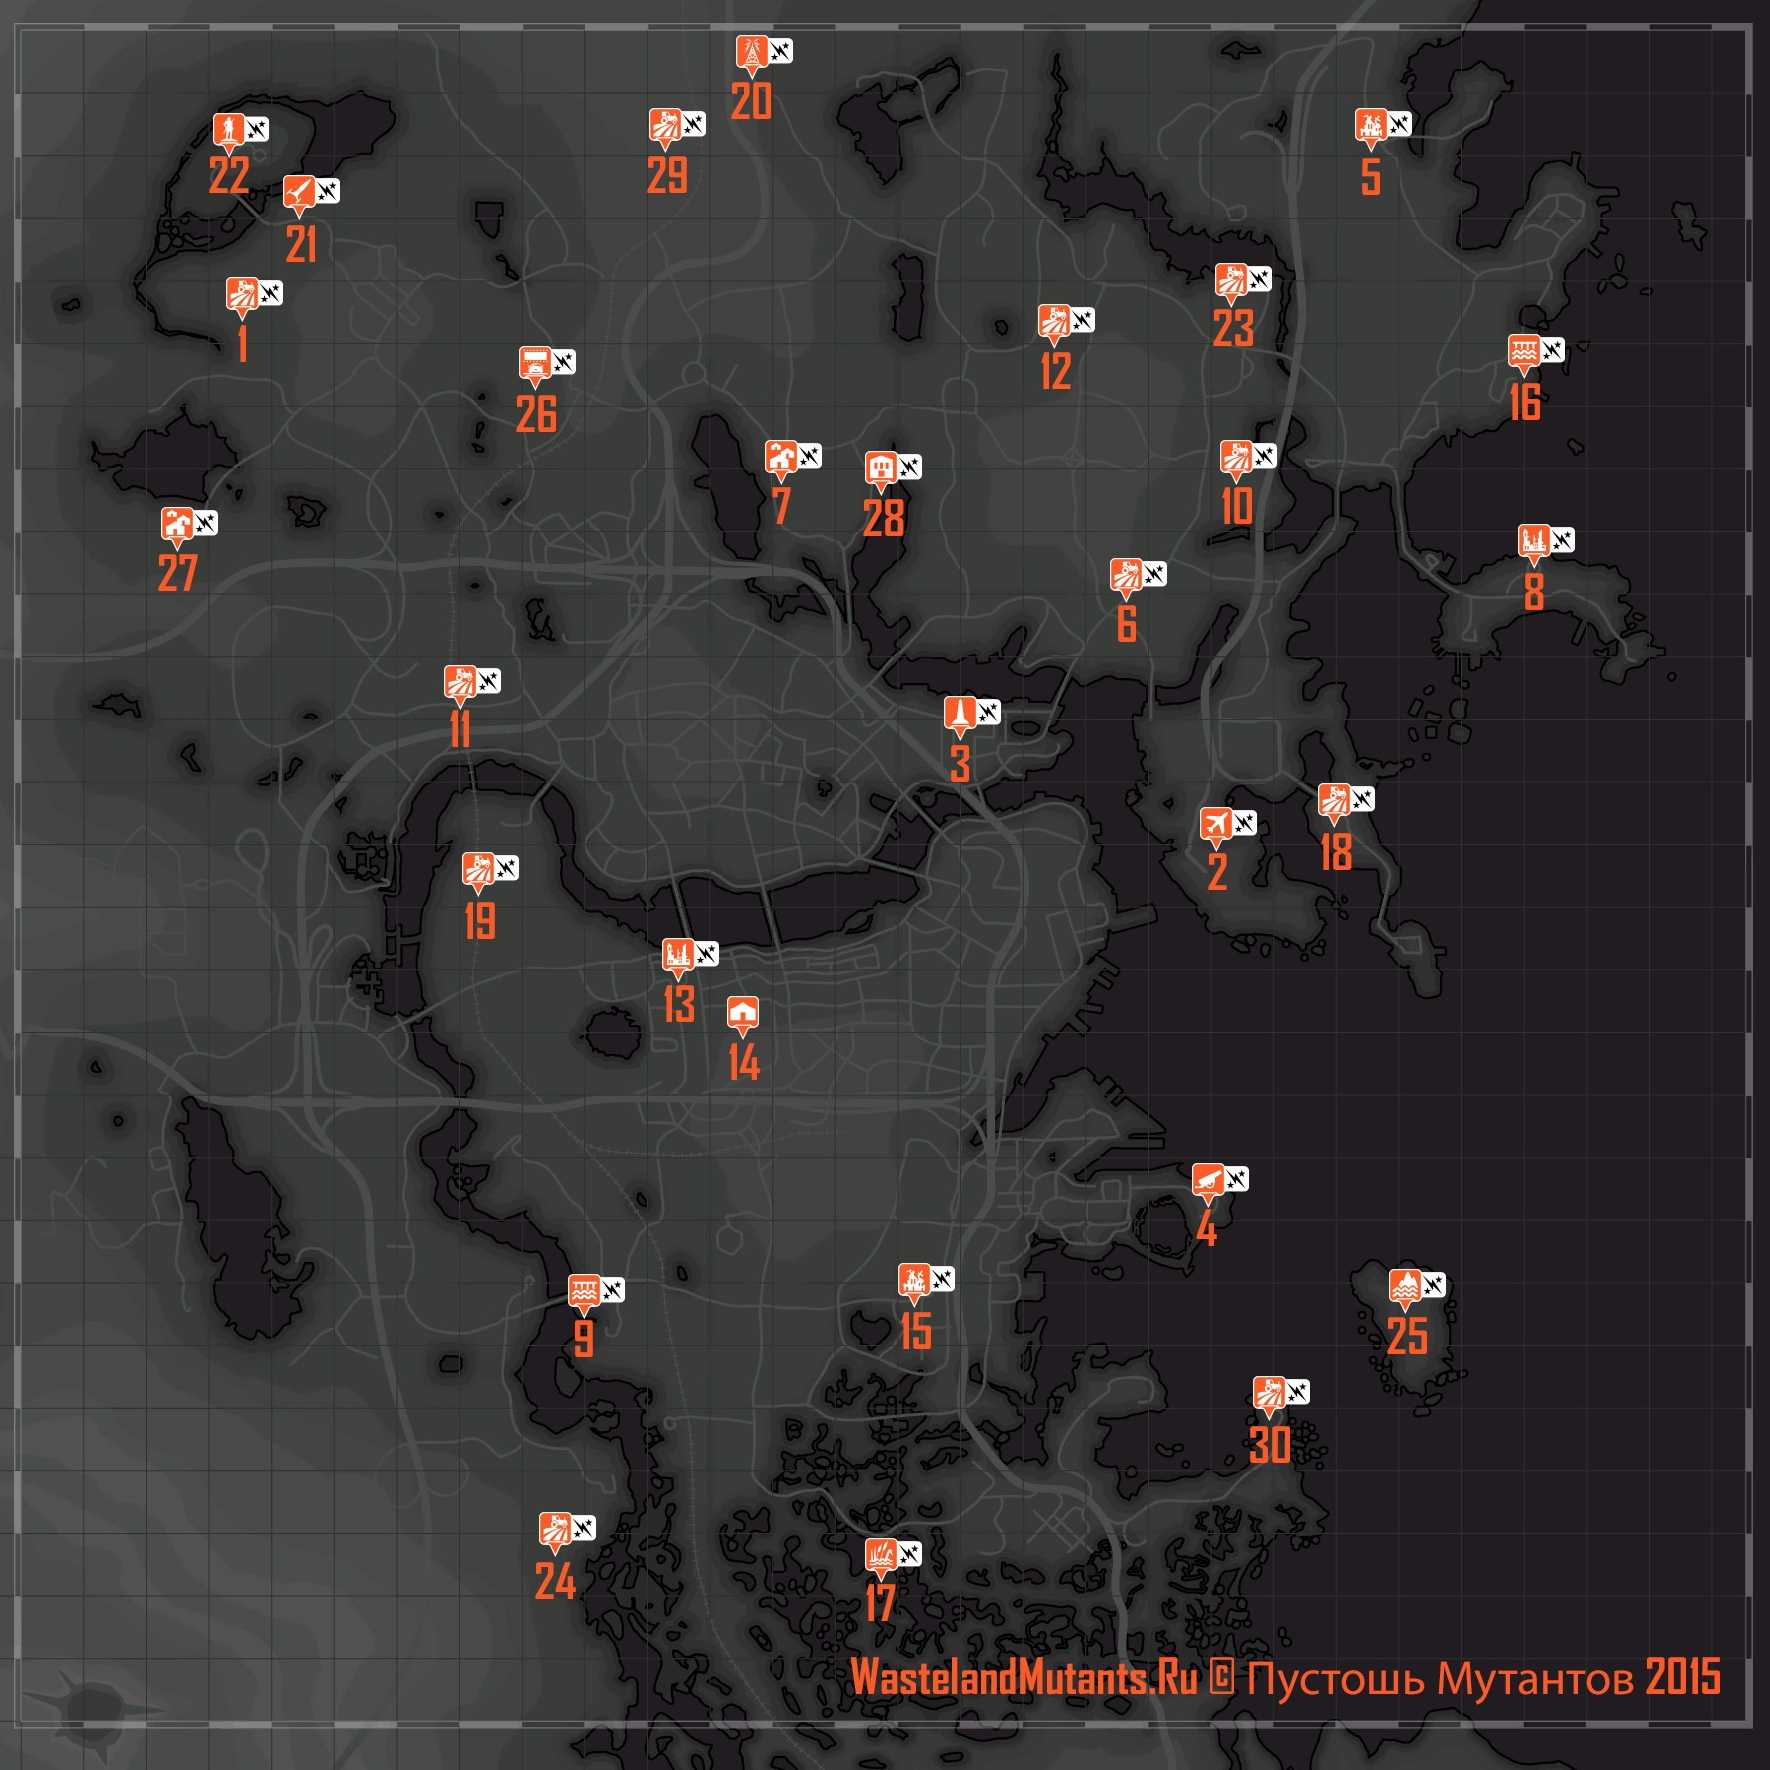 джамейка плейн в fallout 4 на карте фото 107